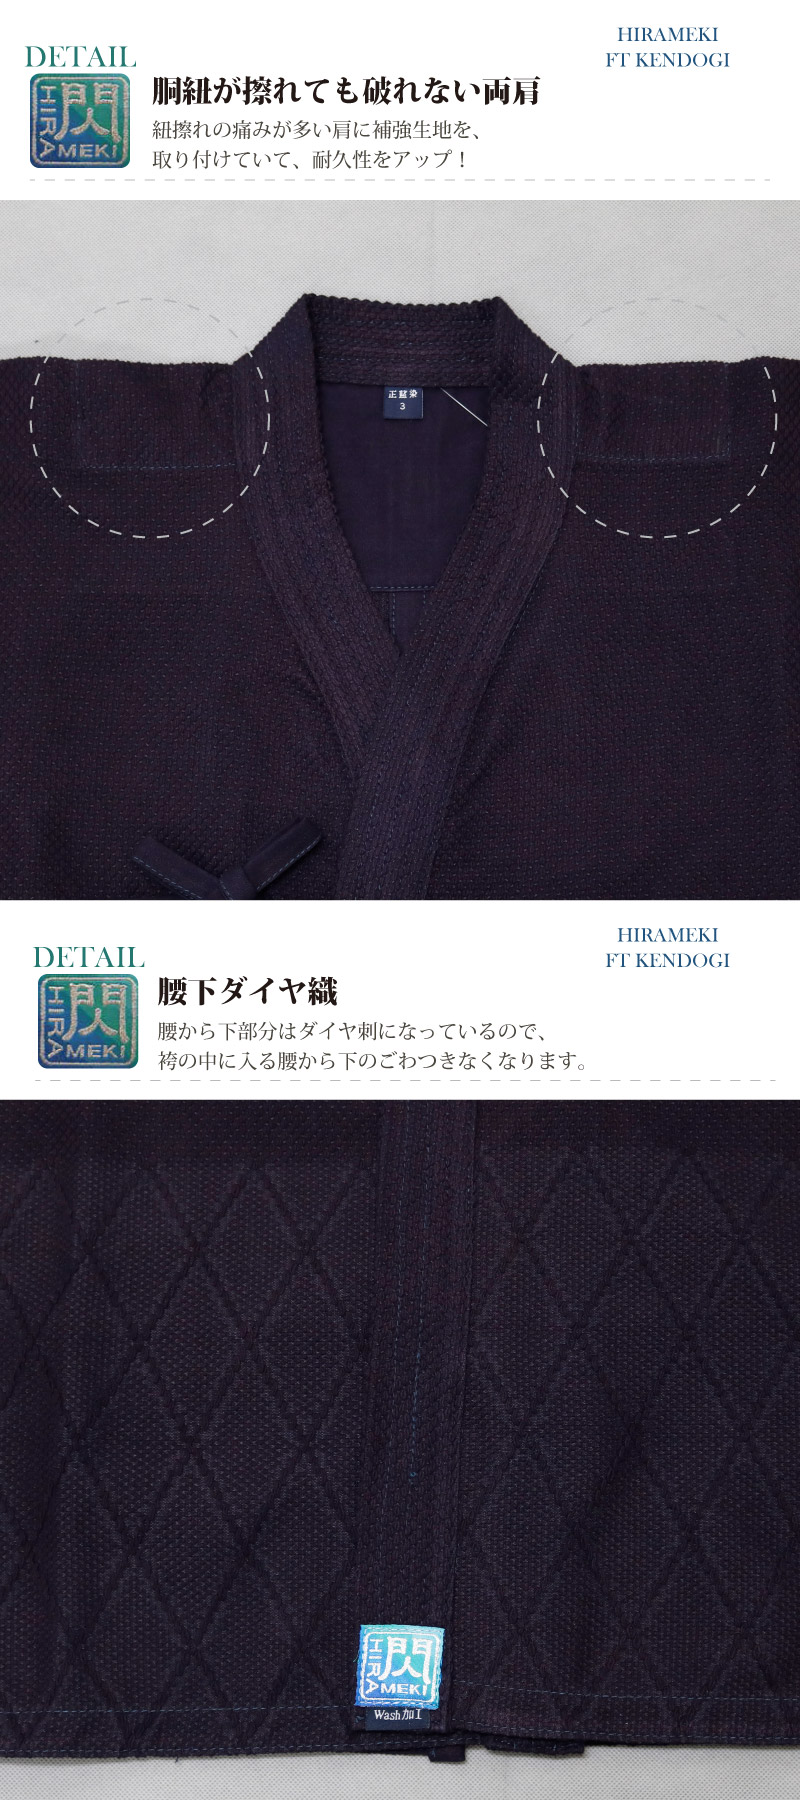 剣道 剣道着 袴 セット「閃」 HIRAMEKI FT 紺色 1L〜5号/23号〜29号